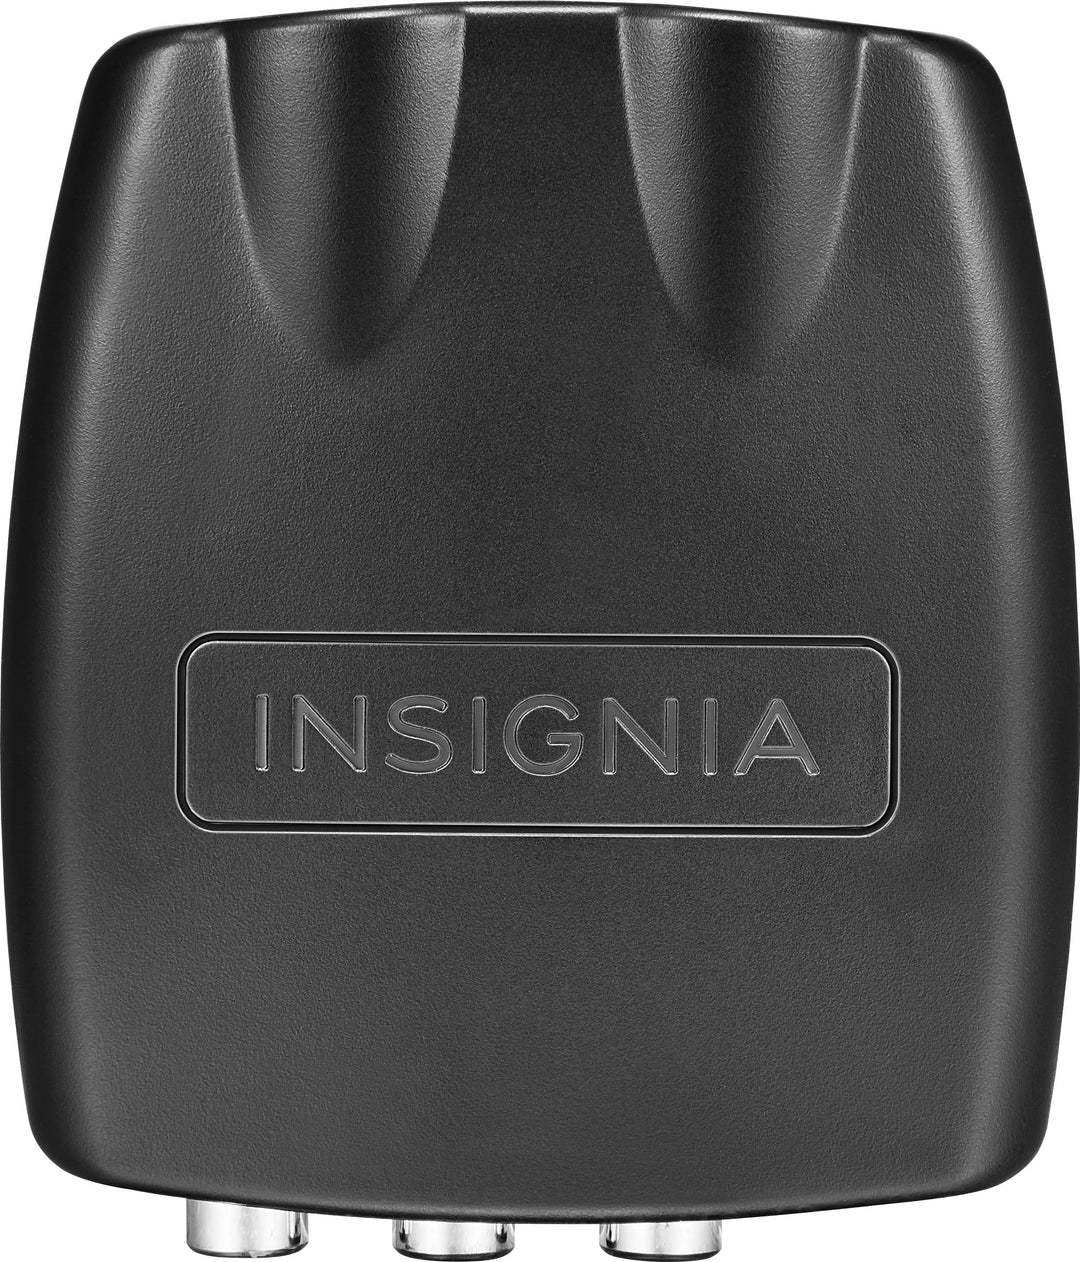 Insignia™ - RCA to HDMI Converter - Black_1